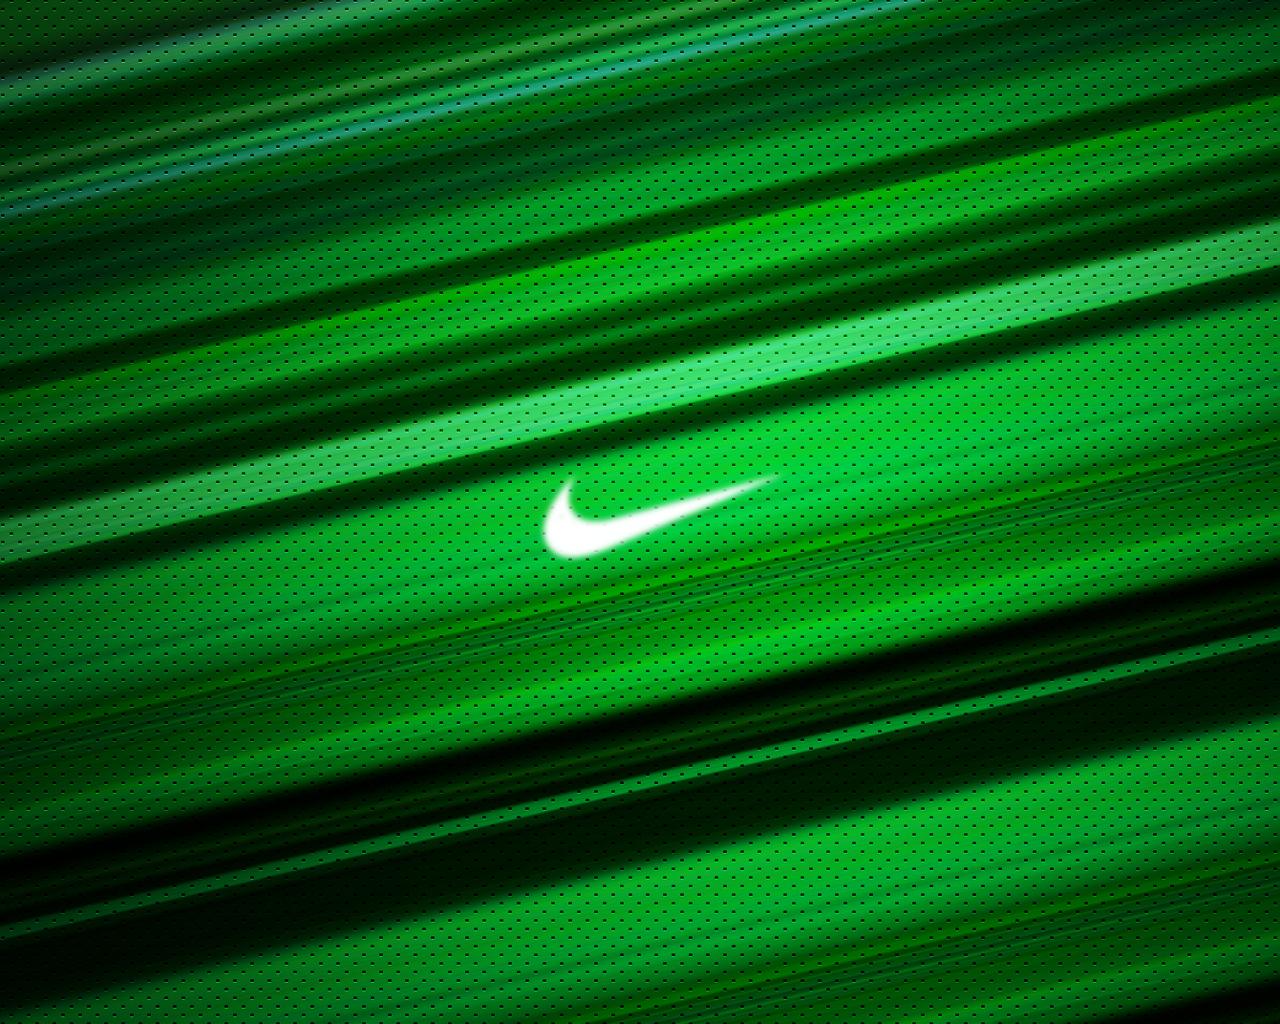 Nike hình nền màu neon đẹp: Đến với hình nền Nike màu neon, bạn sẽ được chiêm ngưỡng những gam màu sáng tối pha lẫn nhau tạo nên một bức tranh đầy sắc màu rực rỡ. Vẻ đẹp hoàn hảo của những mẫu hình nền màu neon sẽ khiến bạn không thể rời mắt. Hãy cùng thưởng thức và trở thành người đầu tiên sở hữu những hình nền này cho thiết bị của mình nhé!